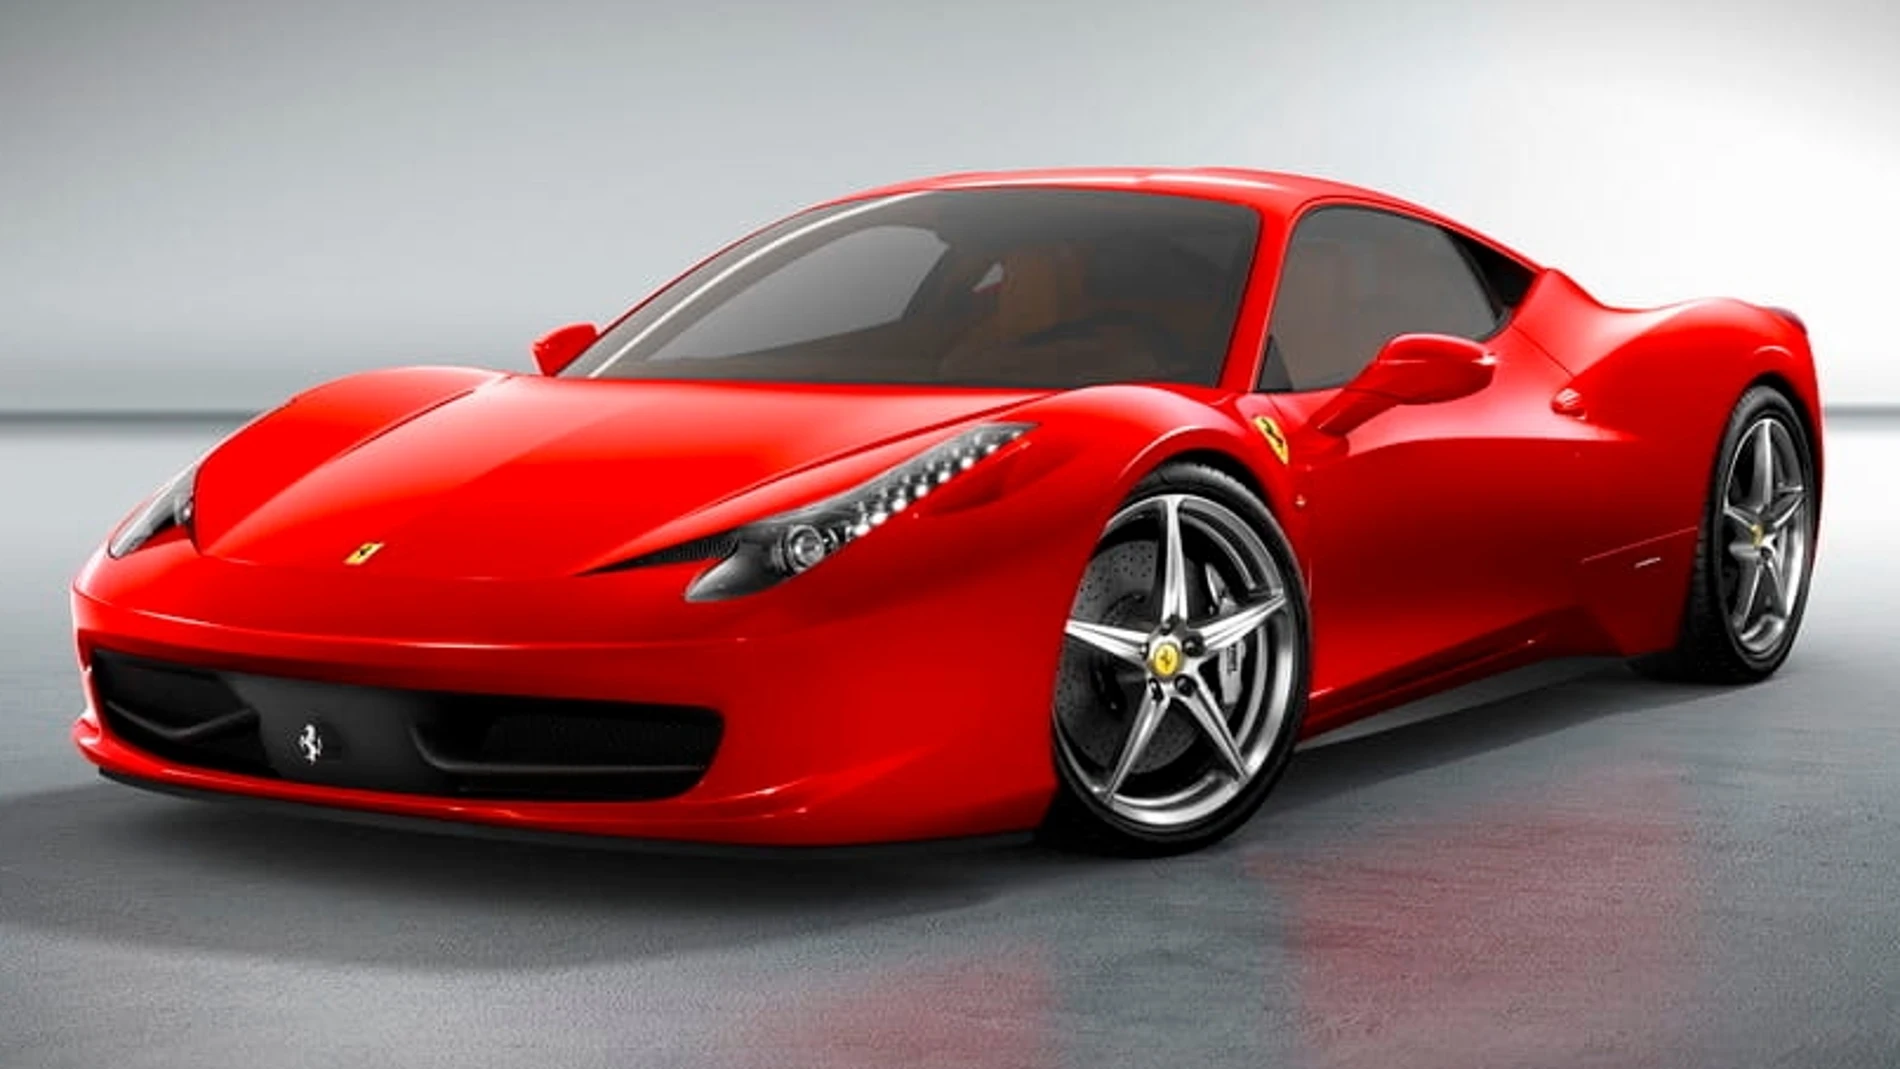 Vehículo de Ferrari